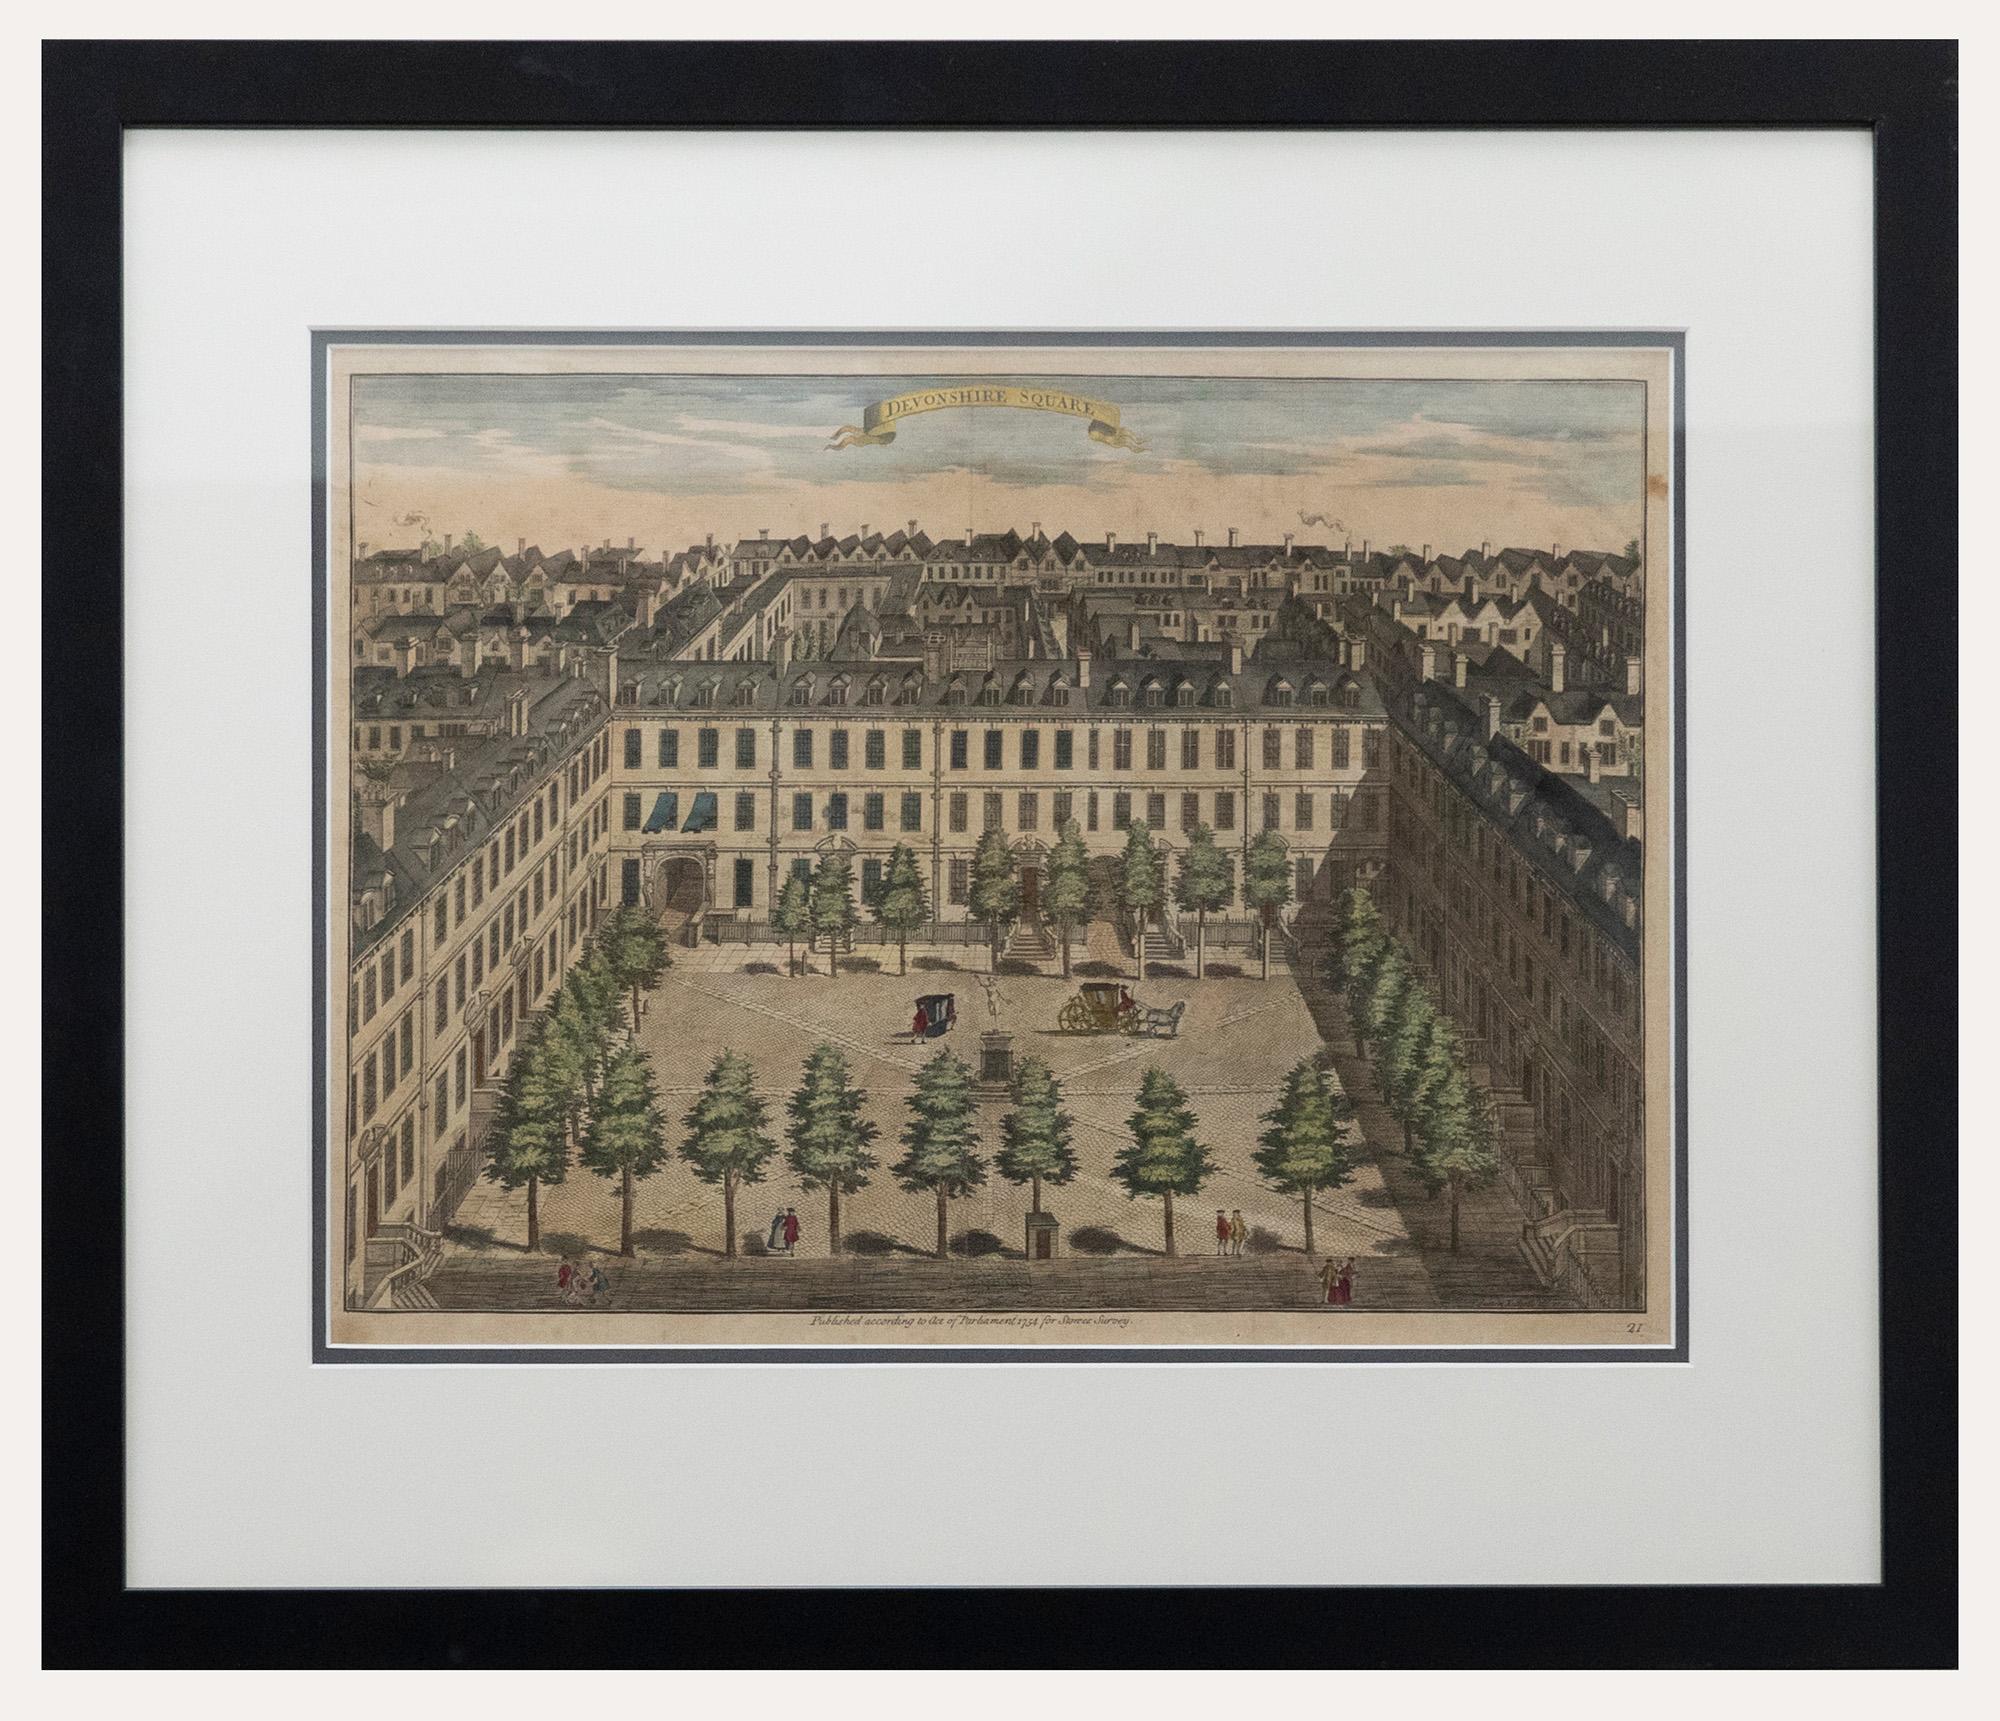 Der Devonshire Square aus der Vogelperspektive, gestochen vom britischen Meister Sutton Nicholls. Veröffentlicht nach dem Gesetz des Parlaments im Jahre 1754 für Stow's Survey of London. Diese detaillierte Gravur wurde mit Handkolorierung veredelt.